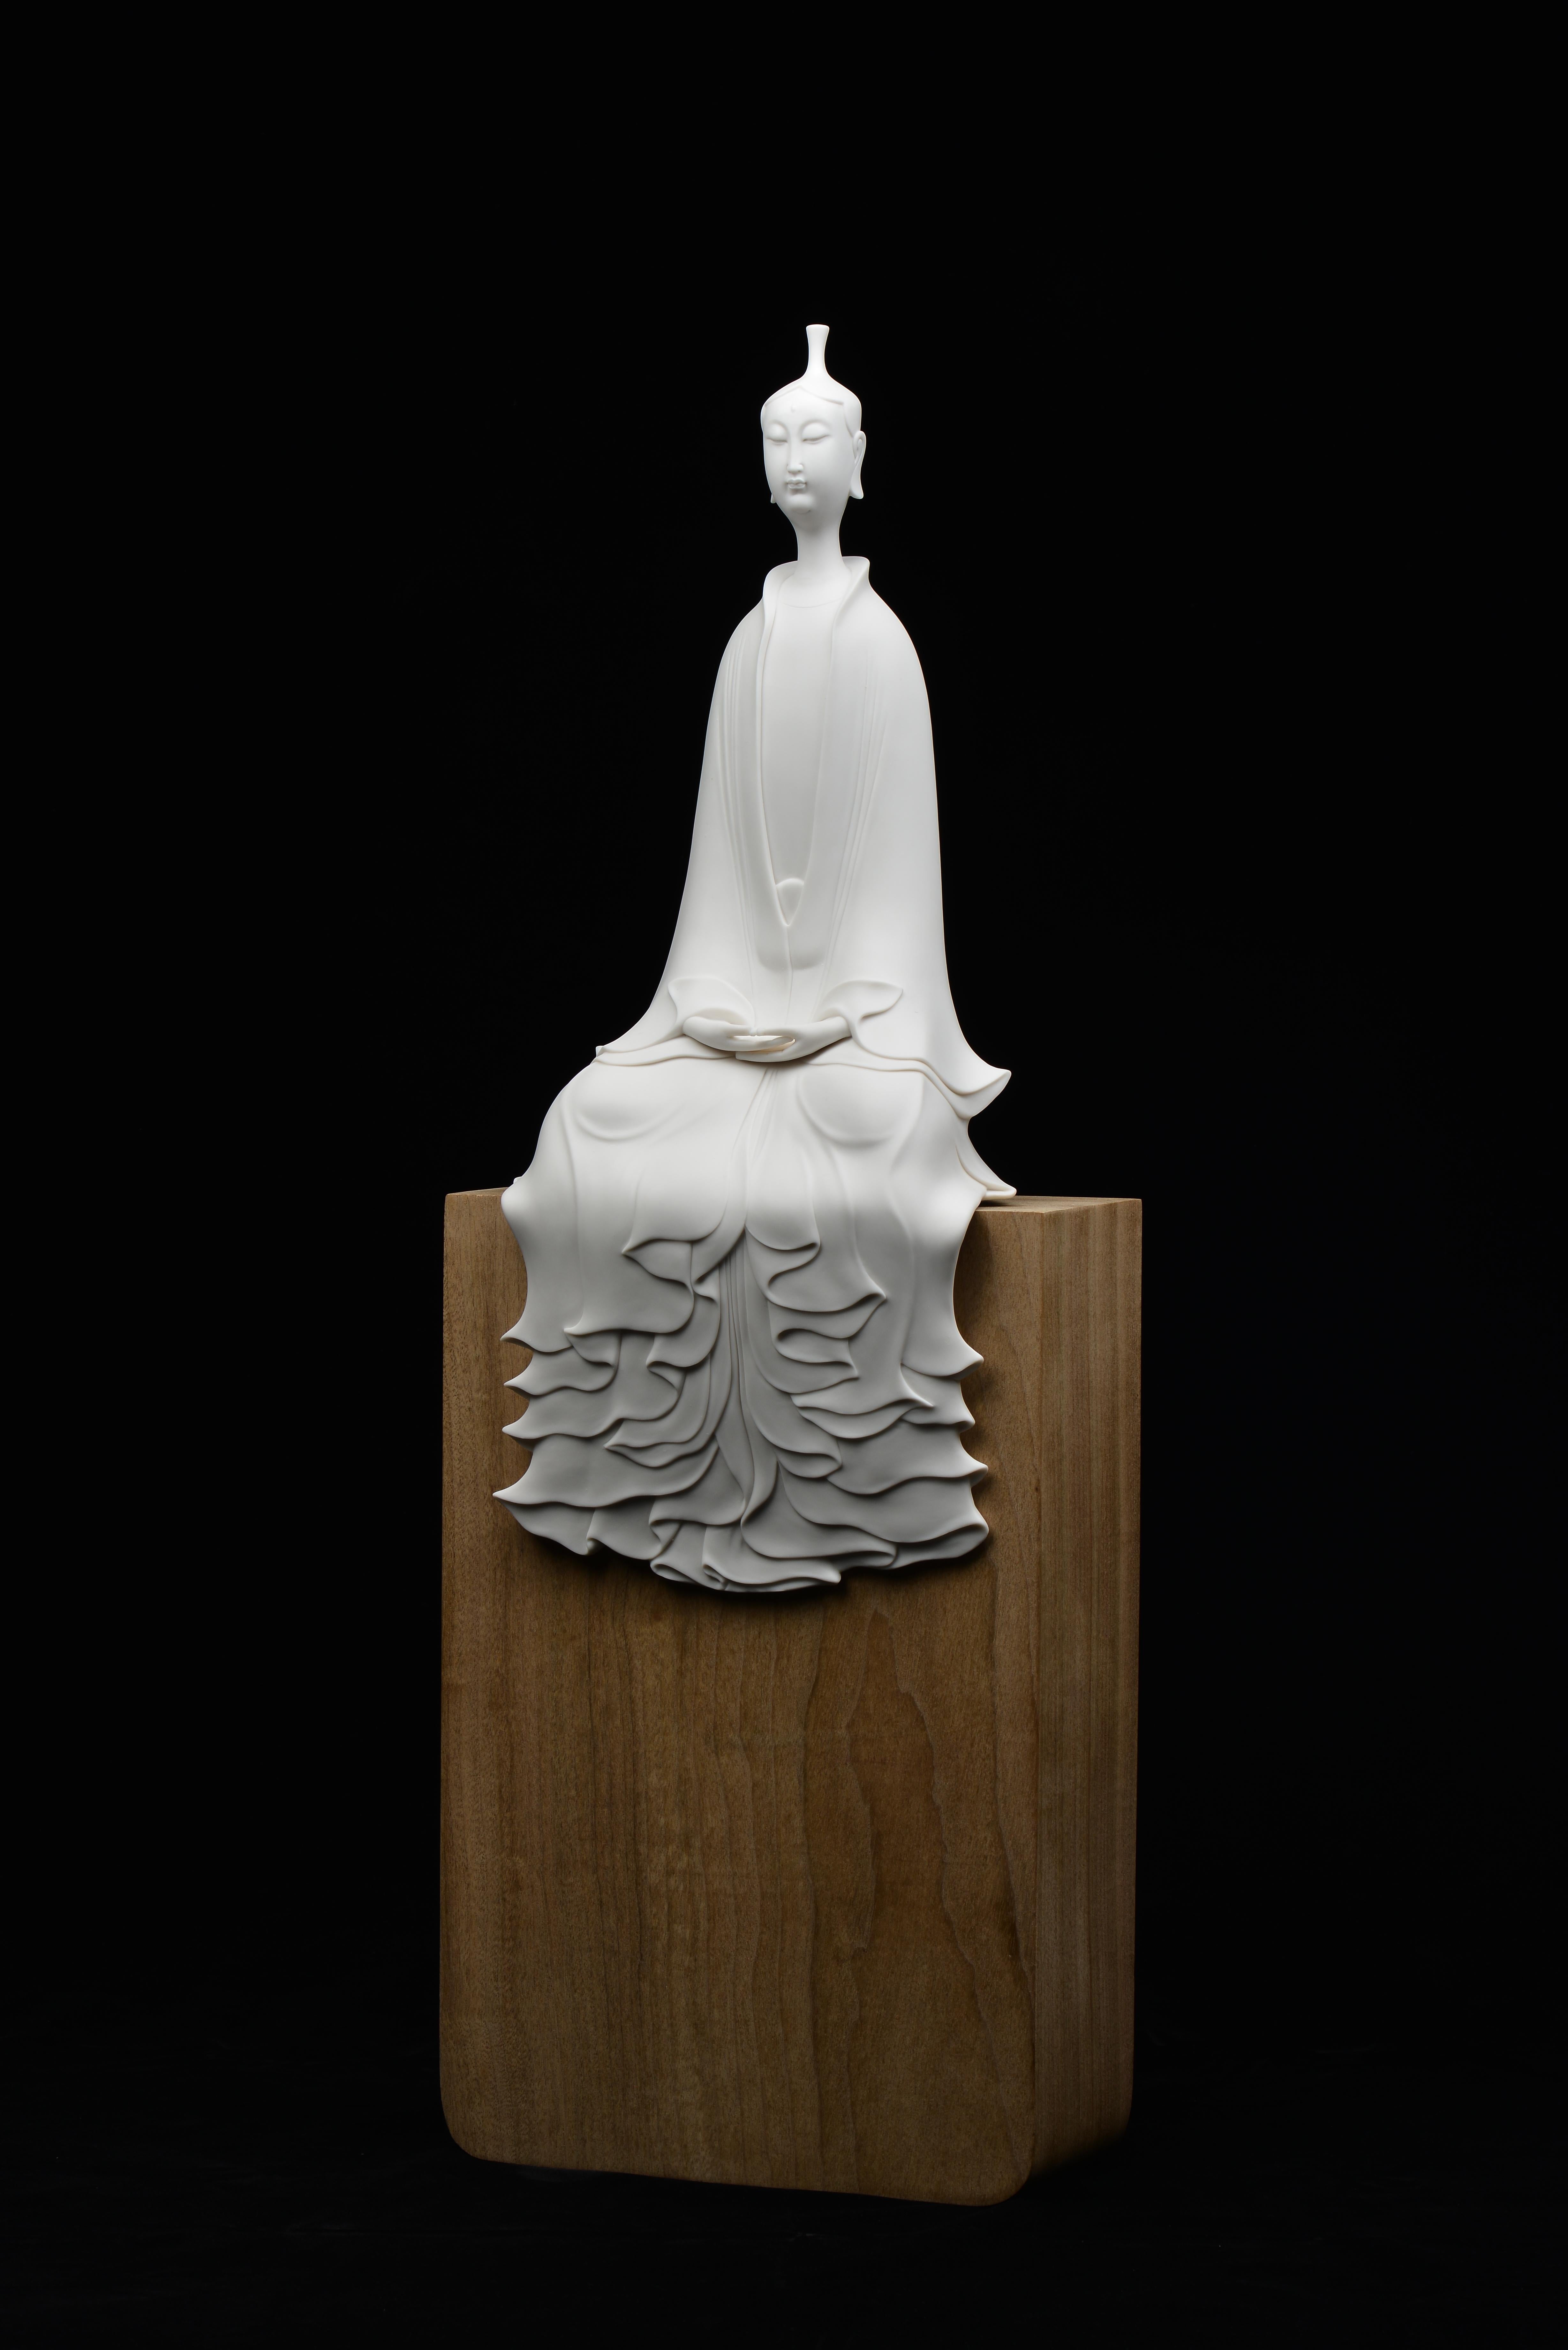 Updo Avalokitesvara in Meditation - Modern Sculpture by JIANG SHENG